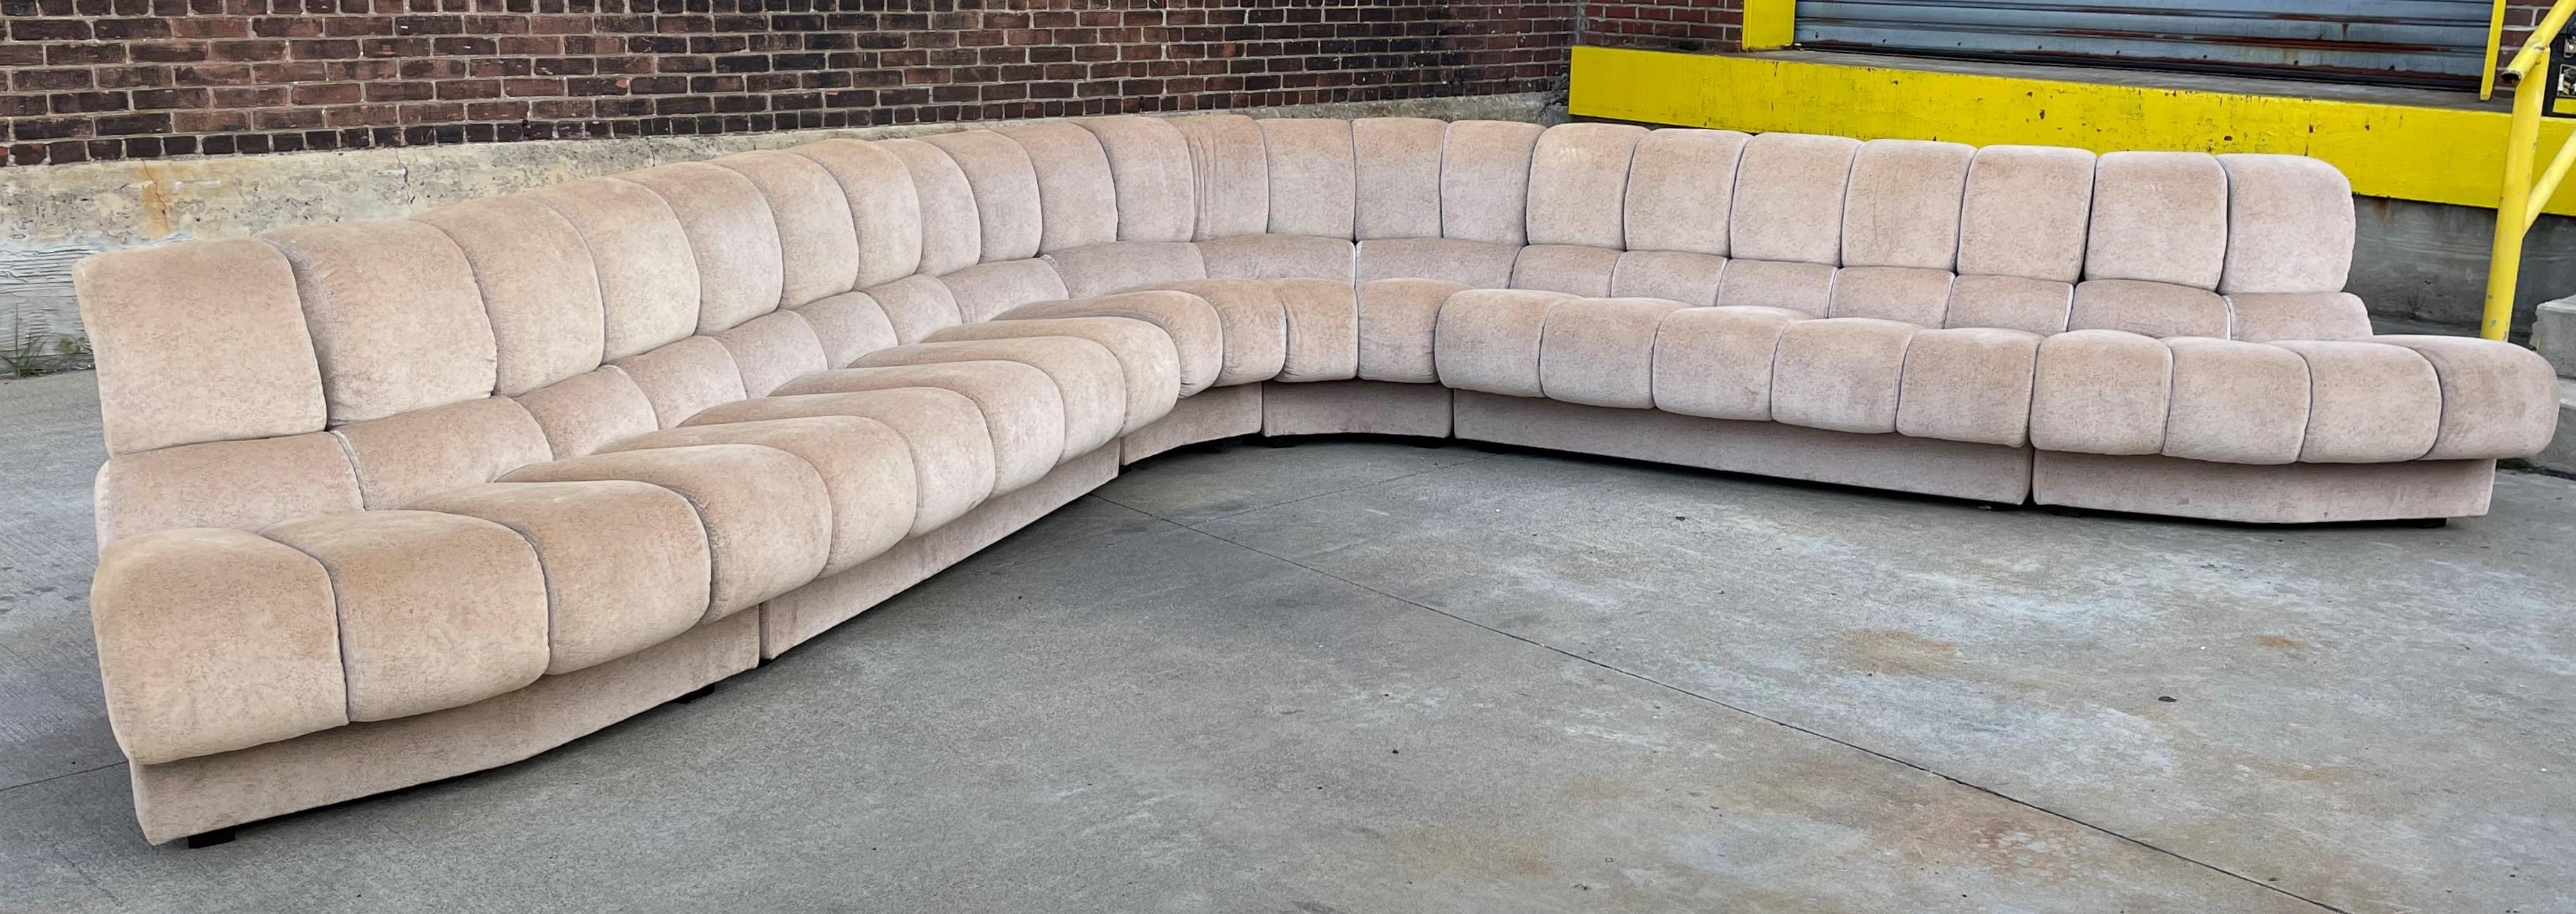 Canapé sectionnel 6 pièces des années 1960. Ce canapé sectionnel est doté du tissu d'origine et de pieds en bois. Le canapé est modulable et peut être agencé de plusieurs façons. Ce canapé est très confortable.
Mesures : 31